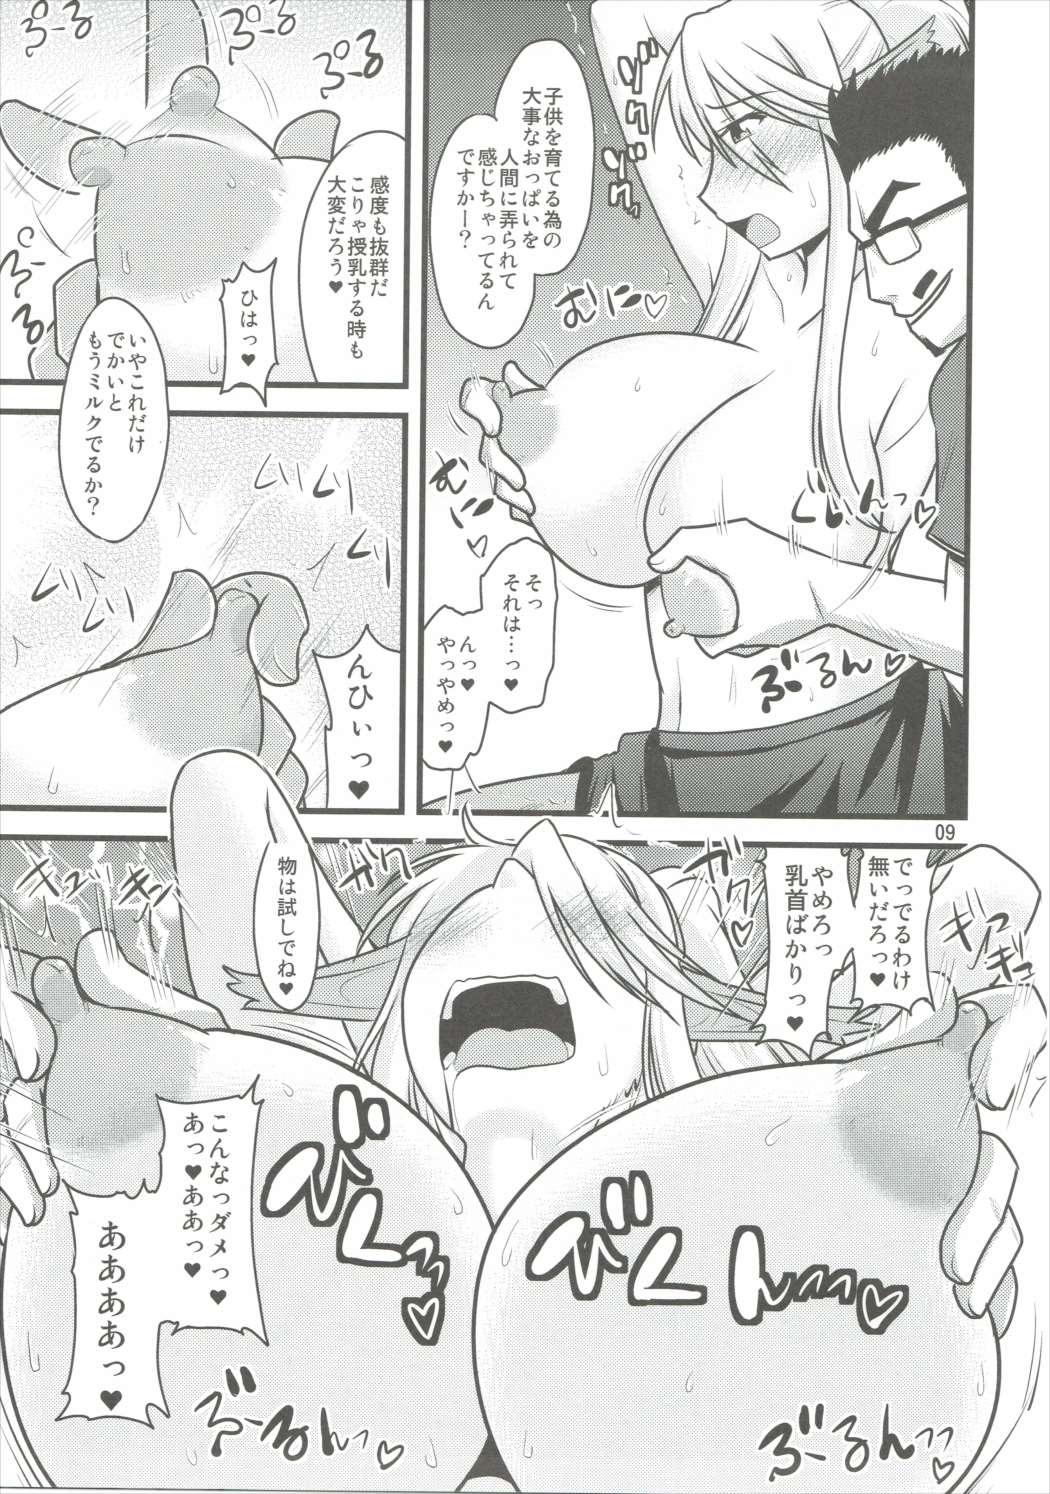 Girls Getting Fucked Umanko NTR Satsueikai - Monster musume no iru nichijou Shemale Porn - Page 8